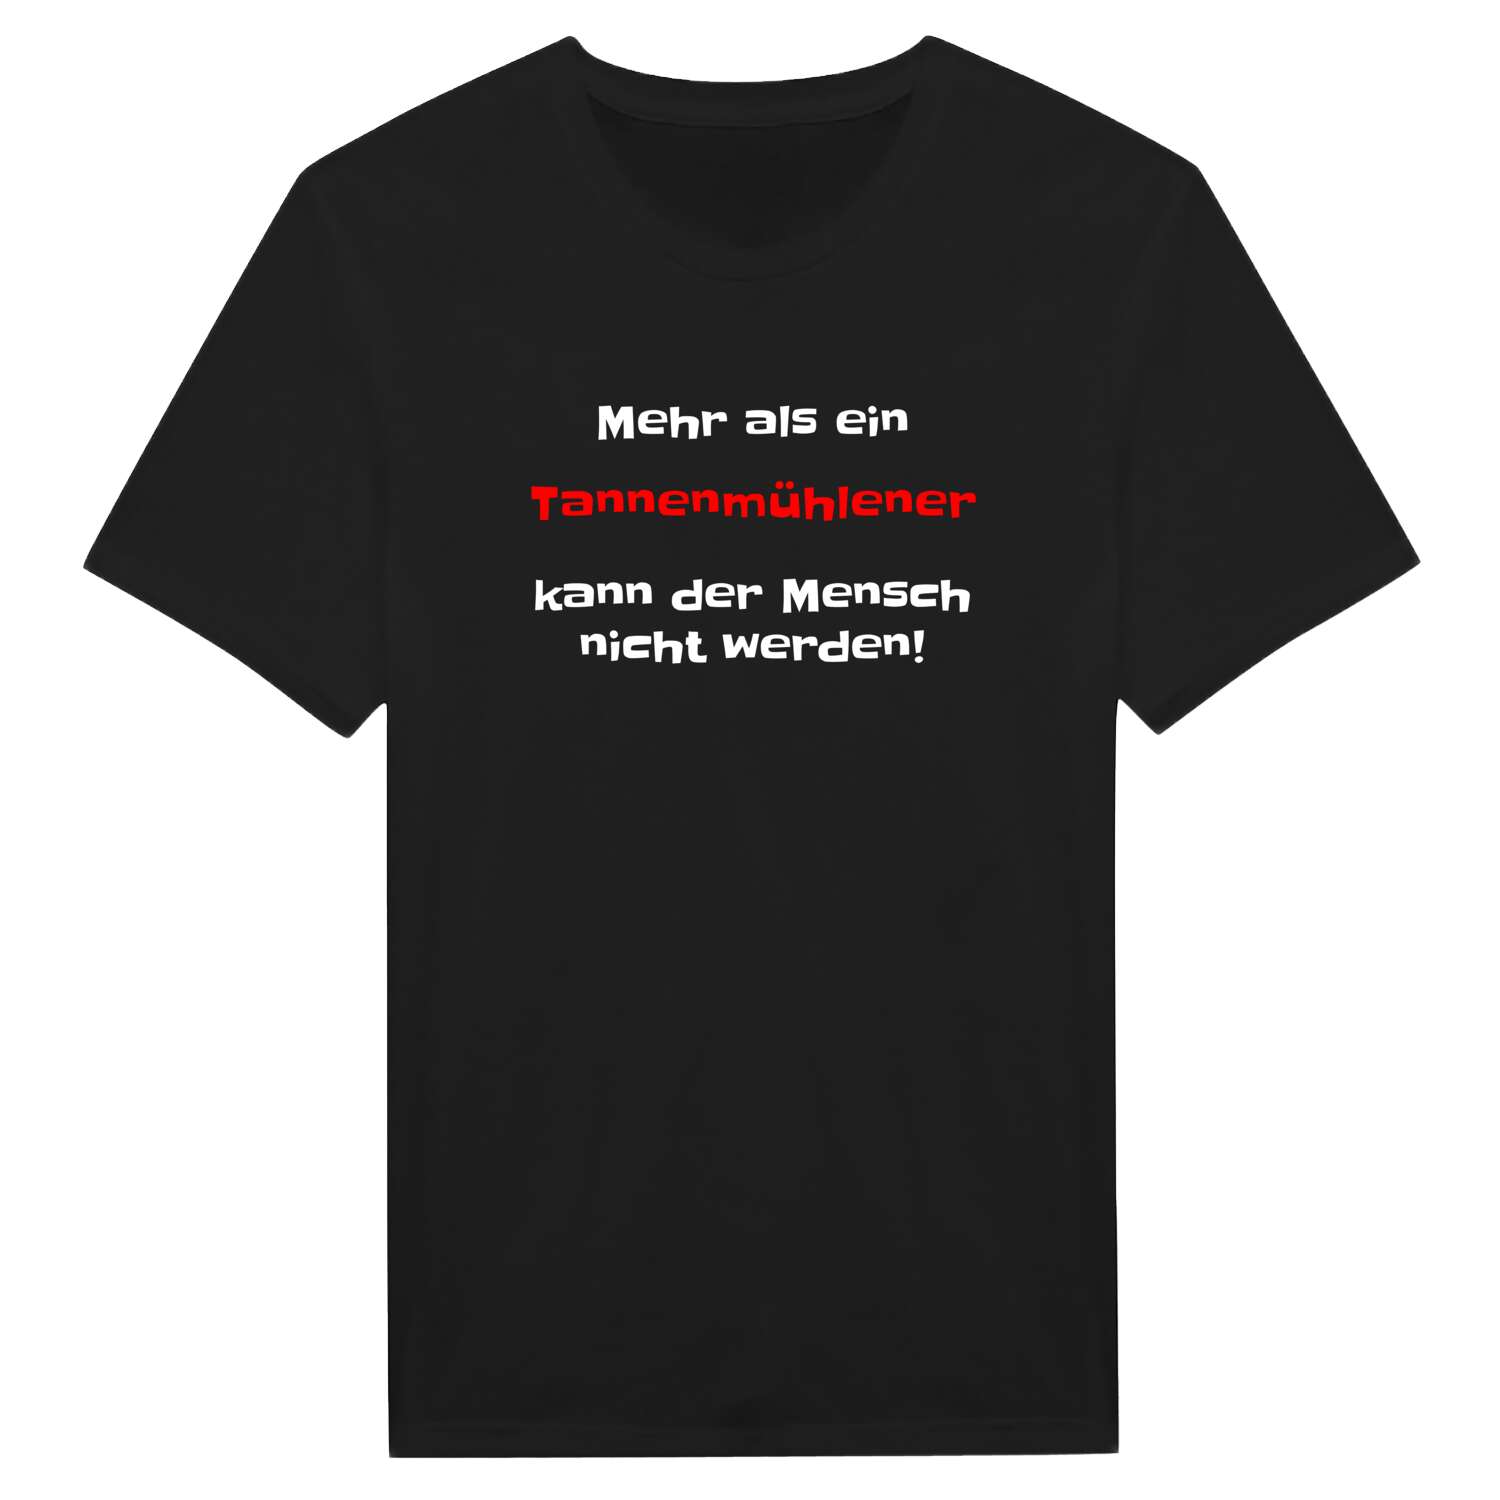 Tannenmühle T-Shirt »Mehr als ein«